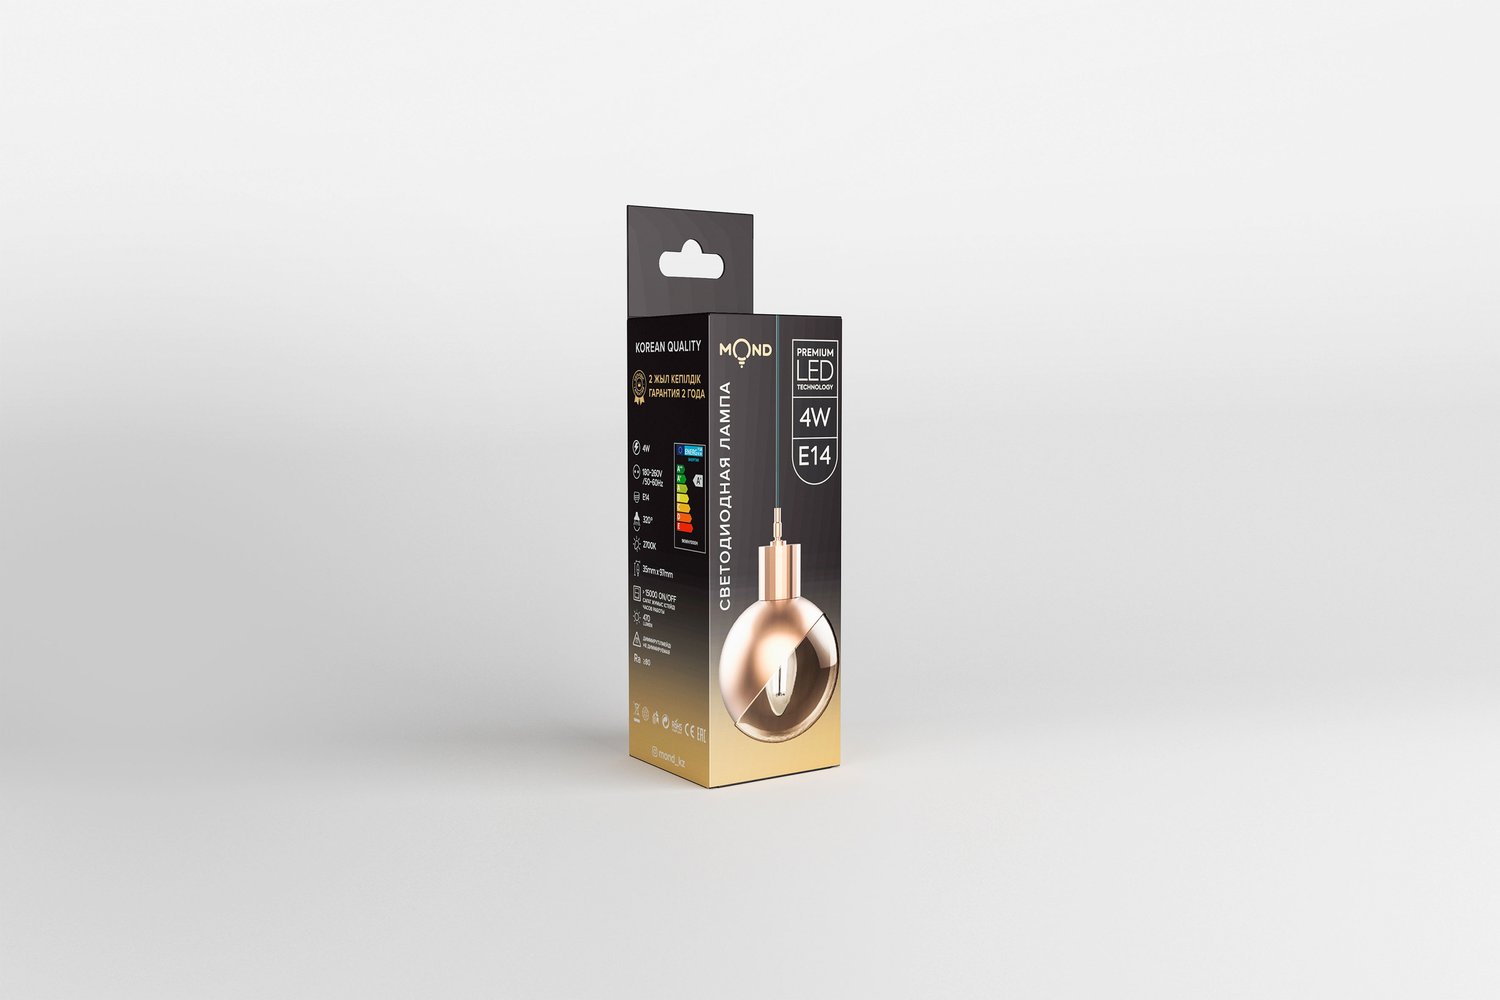 Mond - дизайн упаковки LED-ламп